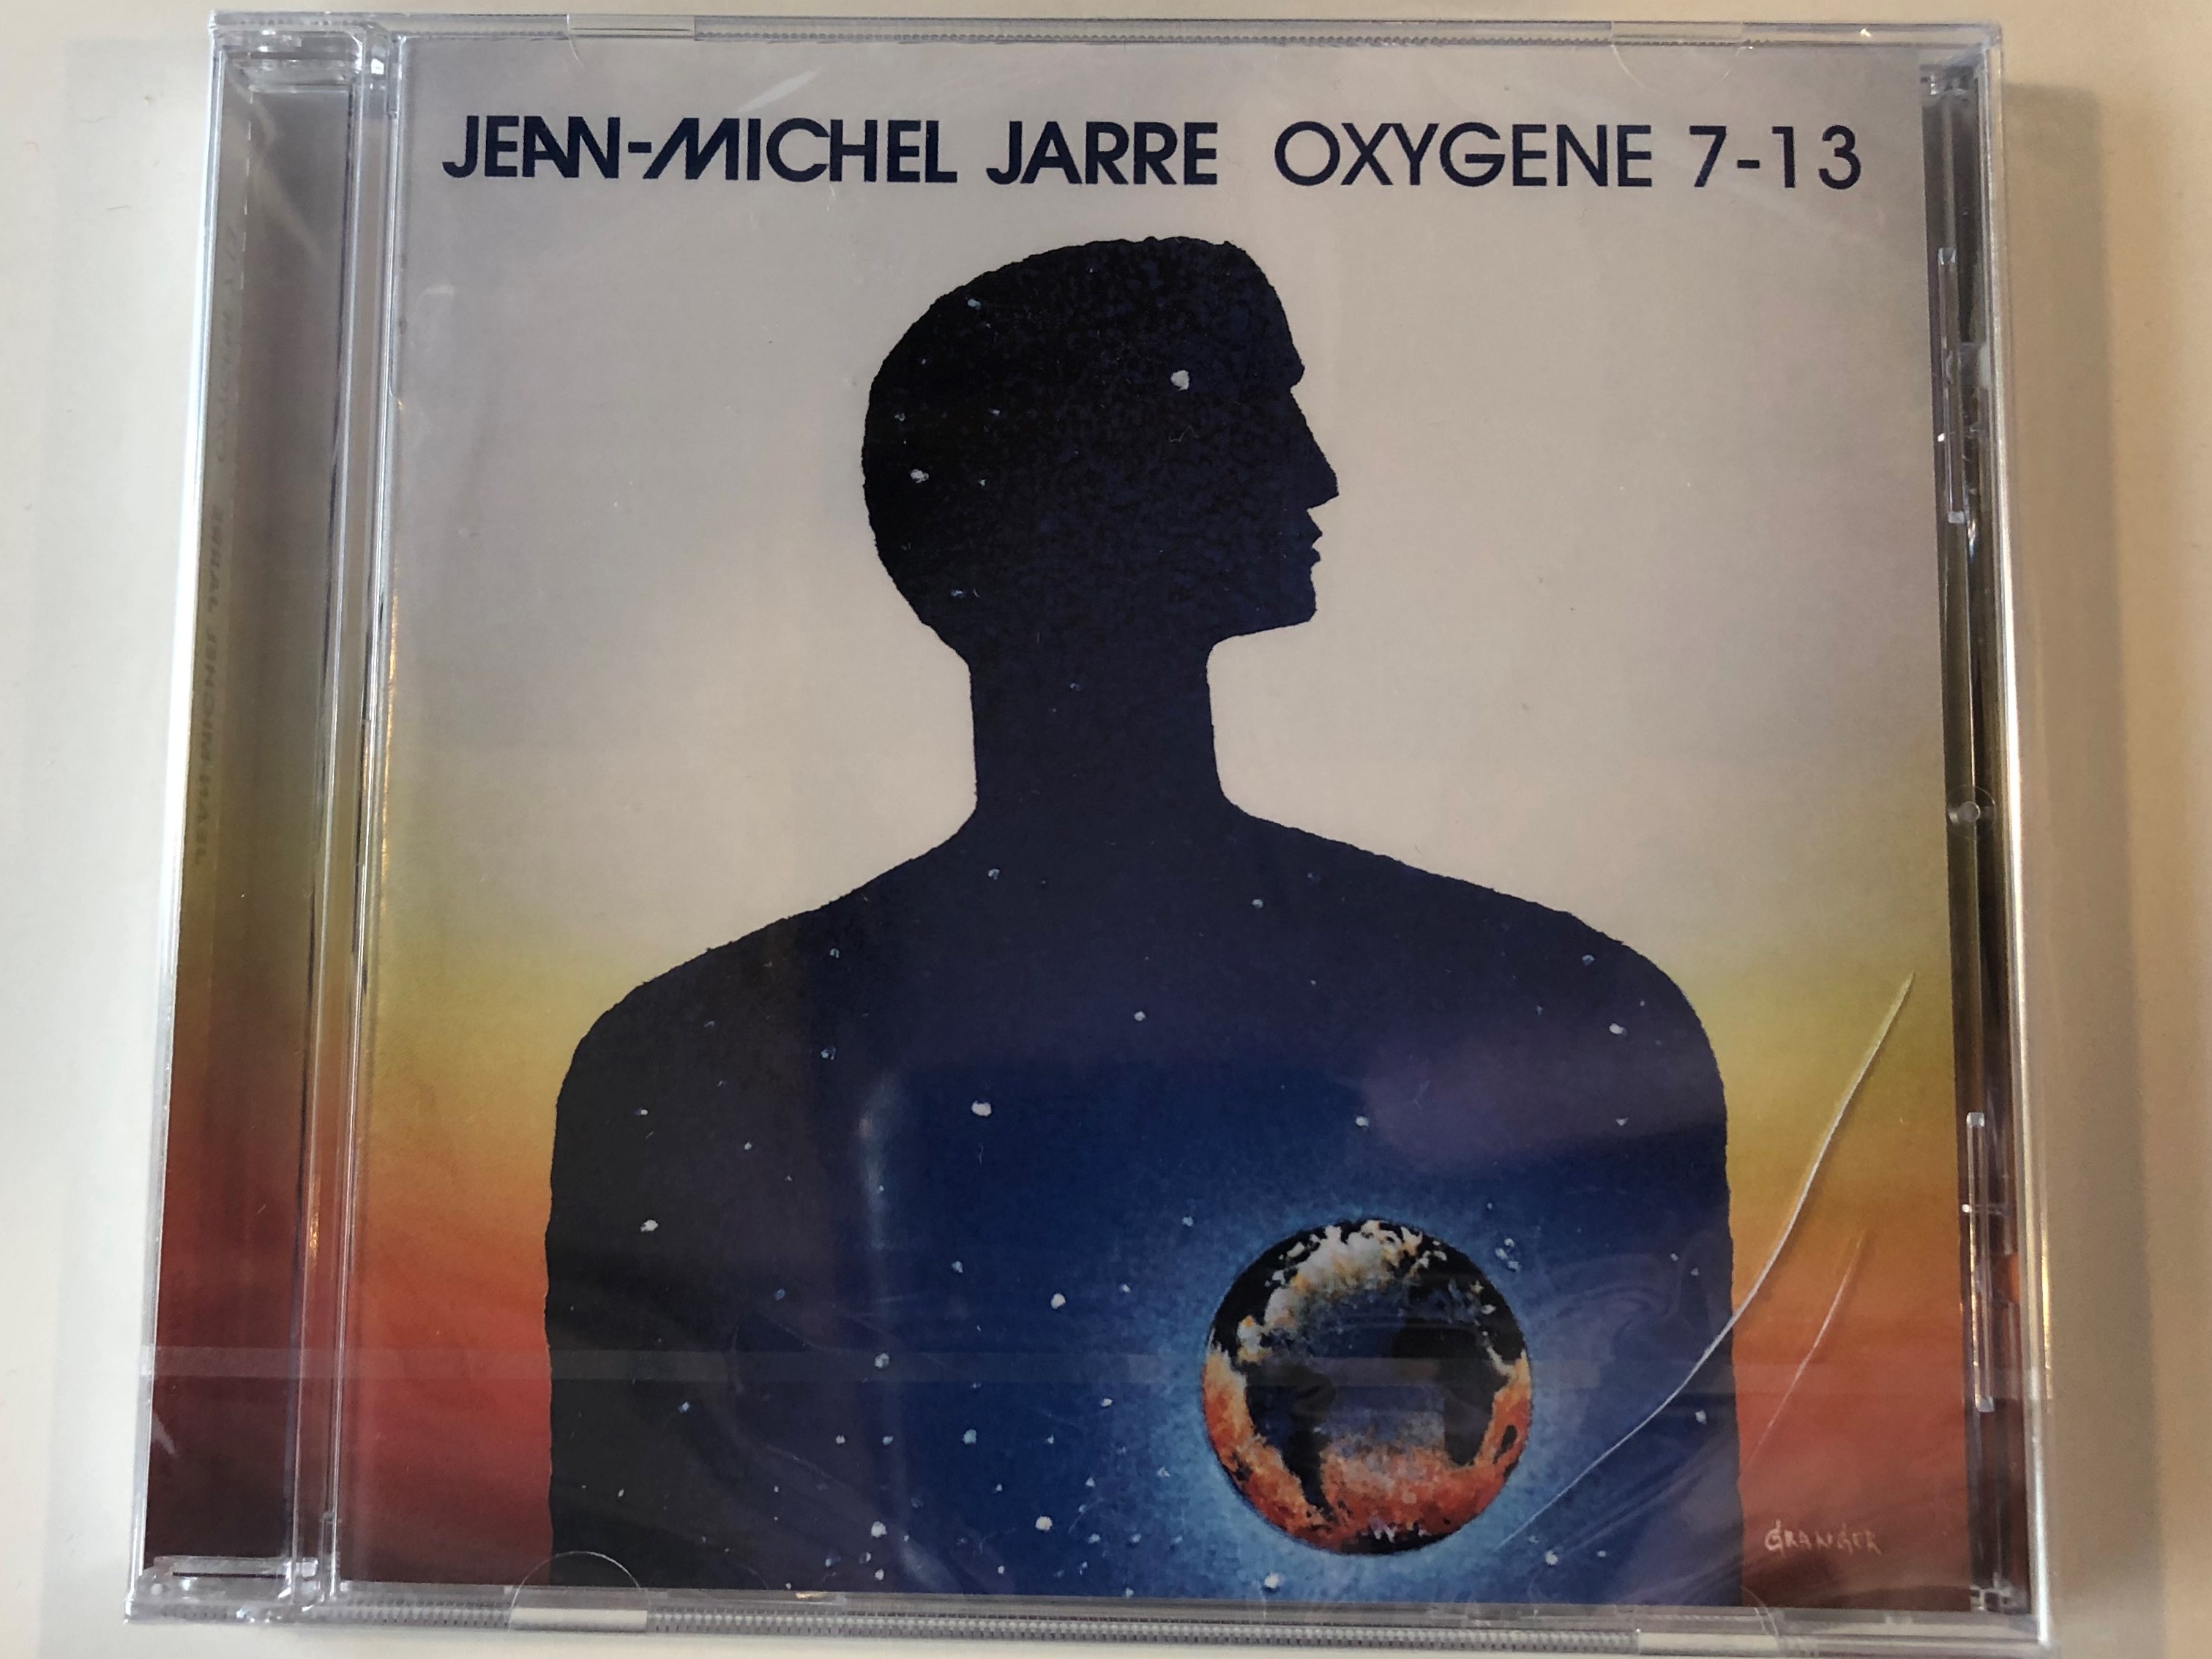 jean-michel-jarre-oxygene-7-13-sony-music-audio-cd-2018-19075833852-1-.jpg